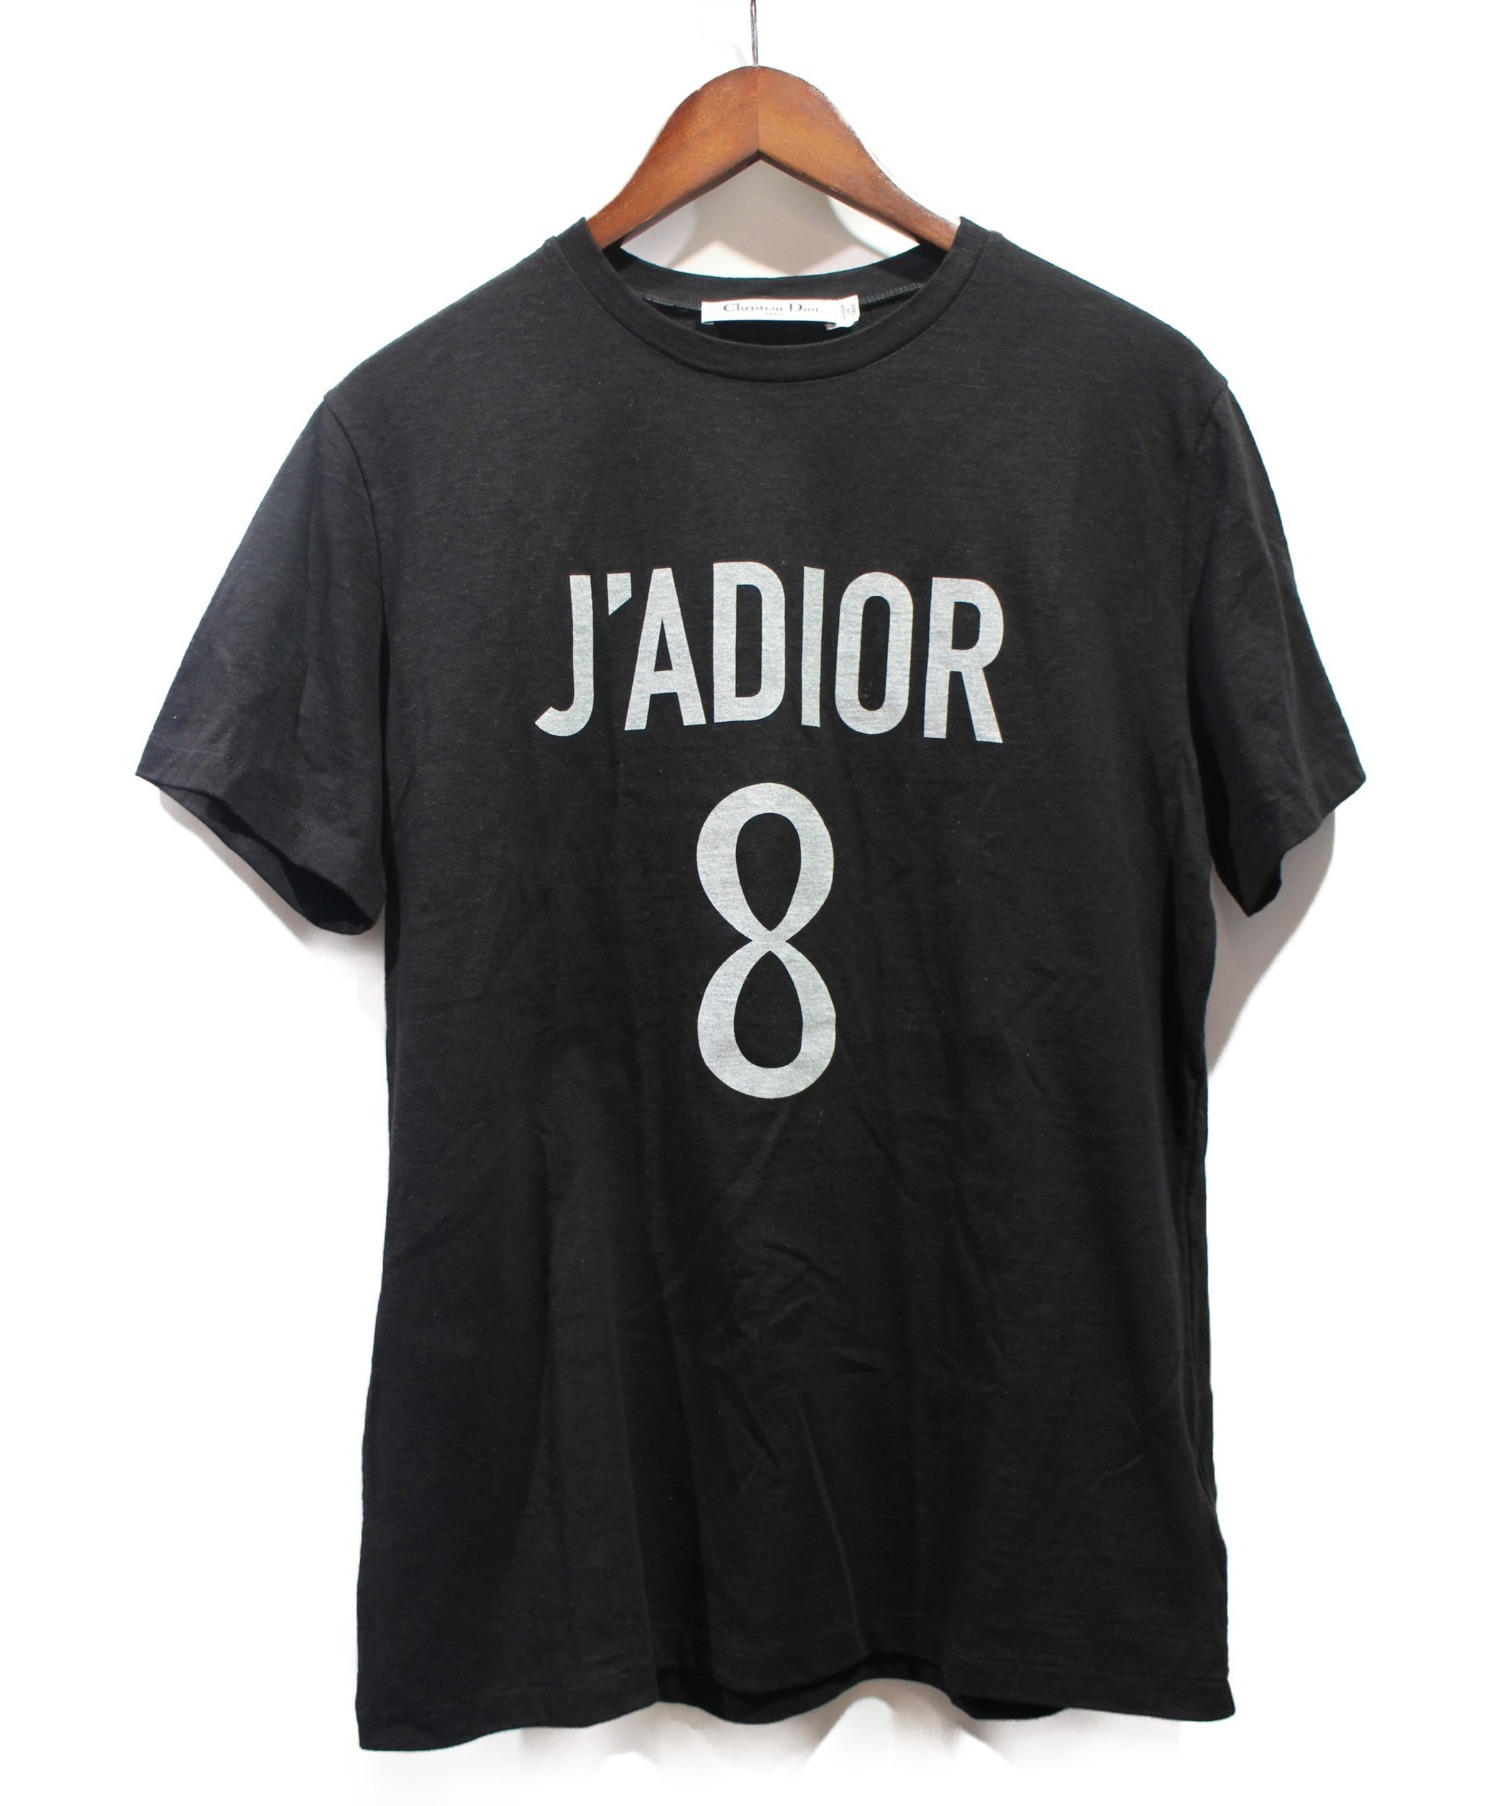 Christian Dior (クリスチャン ディオール) JADIOR Tシャツ ブラック サイズ:L